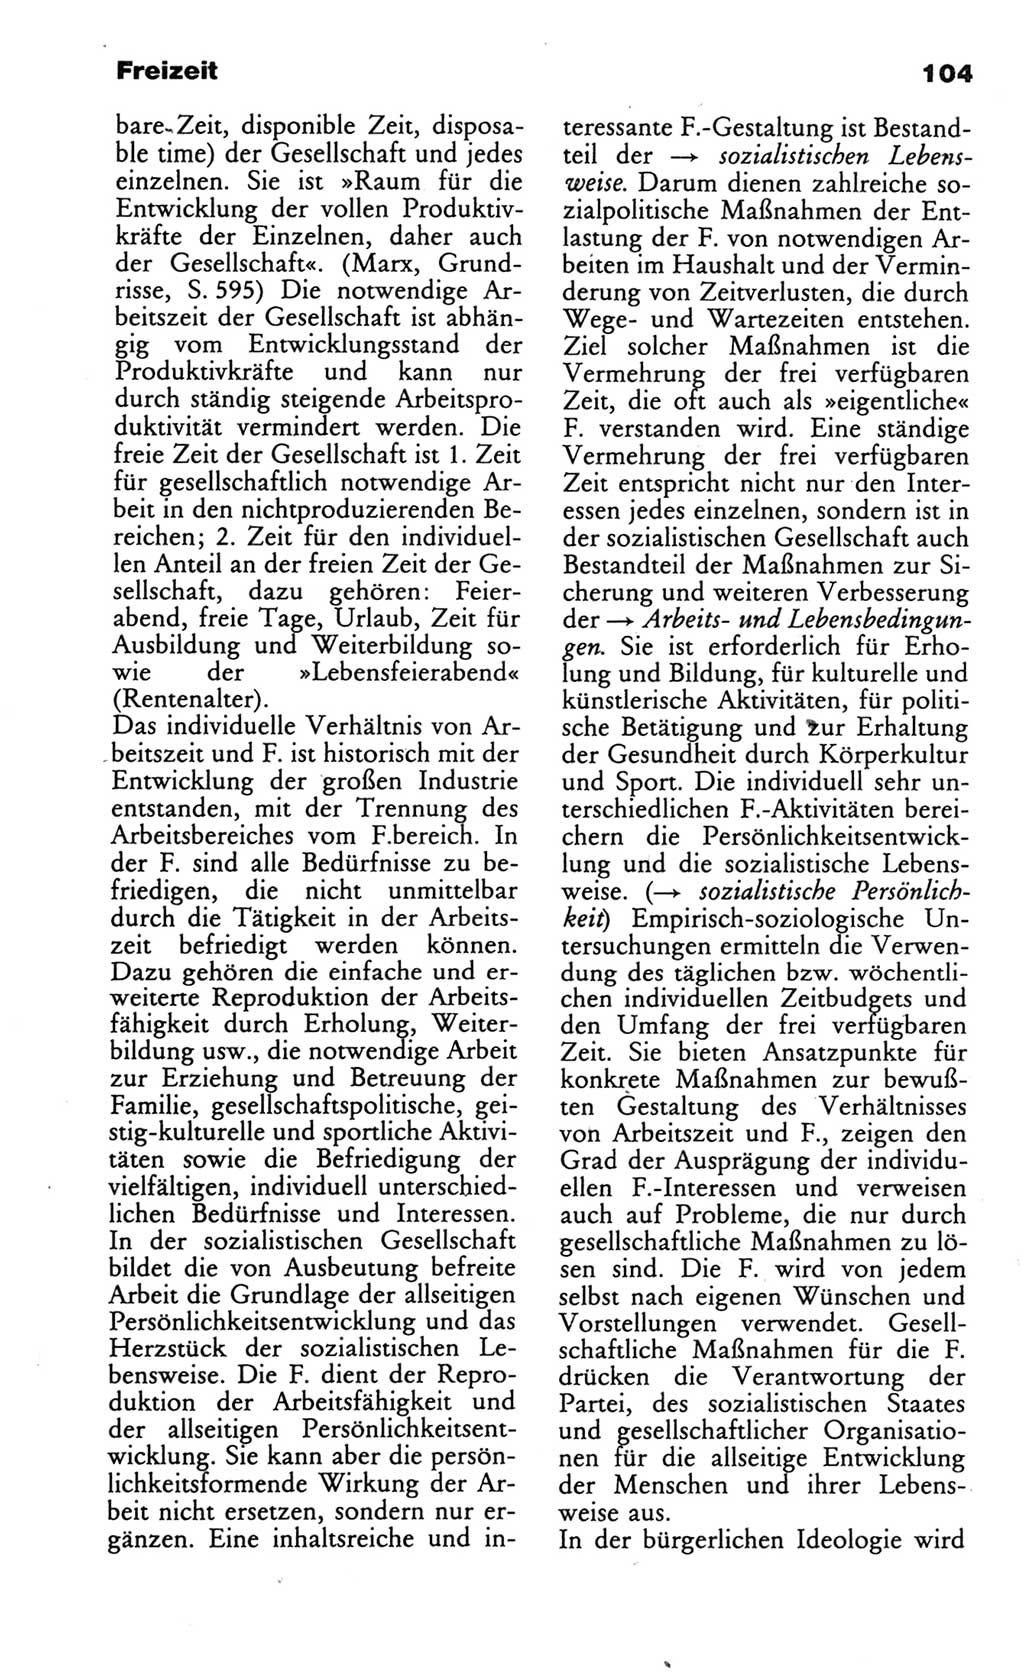 Wörterbuch des wissenschaftlichen Kommunismus [Deutsche Demokratische Republik (DDR)] 1986, Seite 104 (Wb. wiss. Komm. DDR 1986, S. 104)